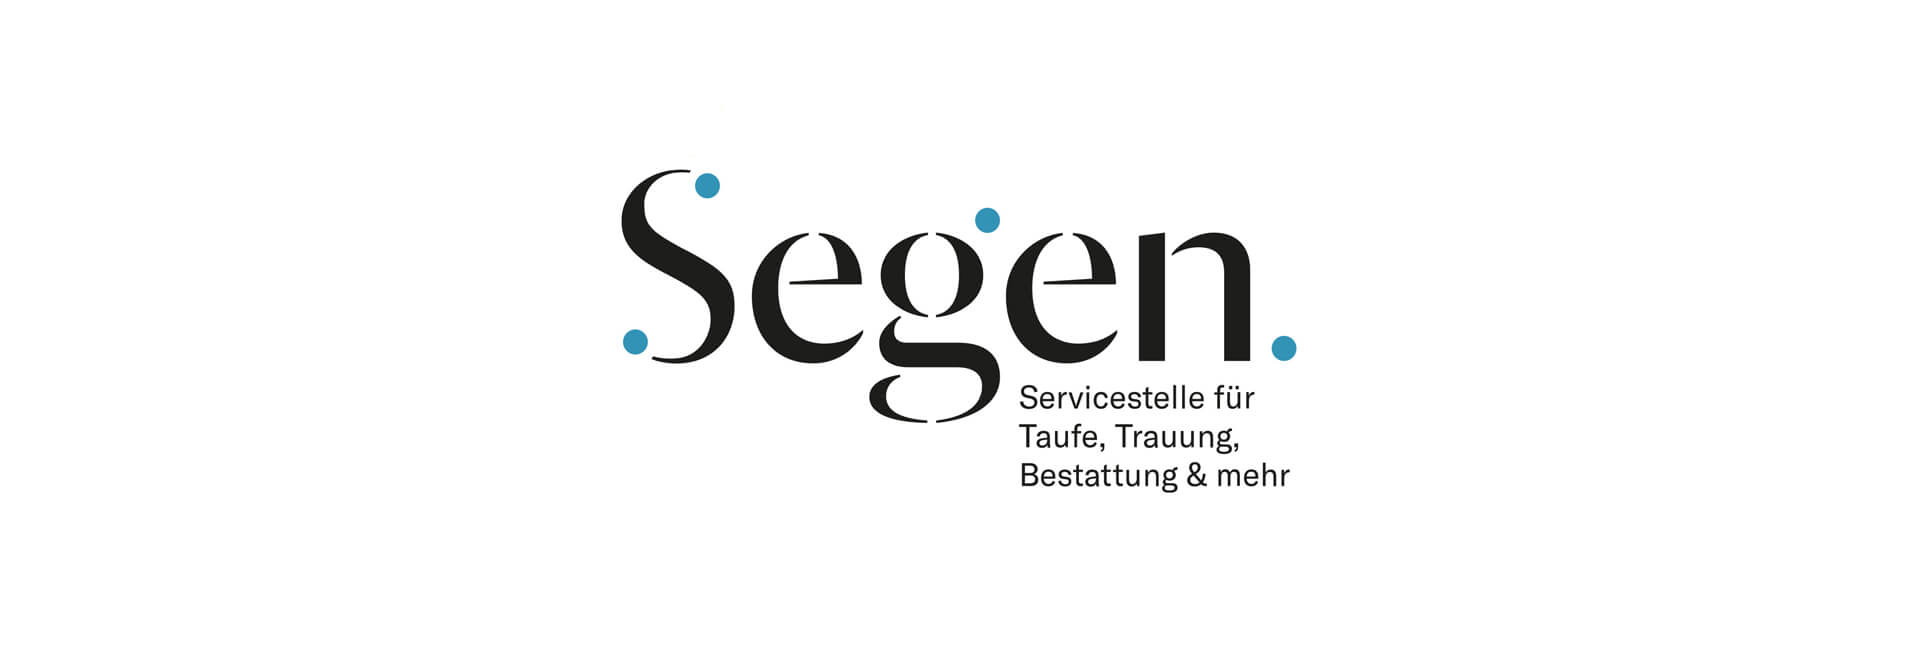 Logo der Servicestelle